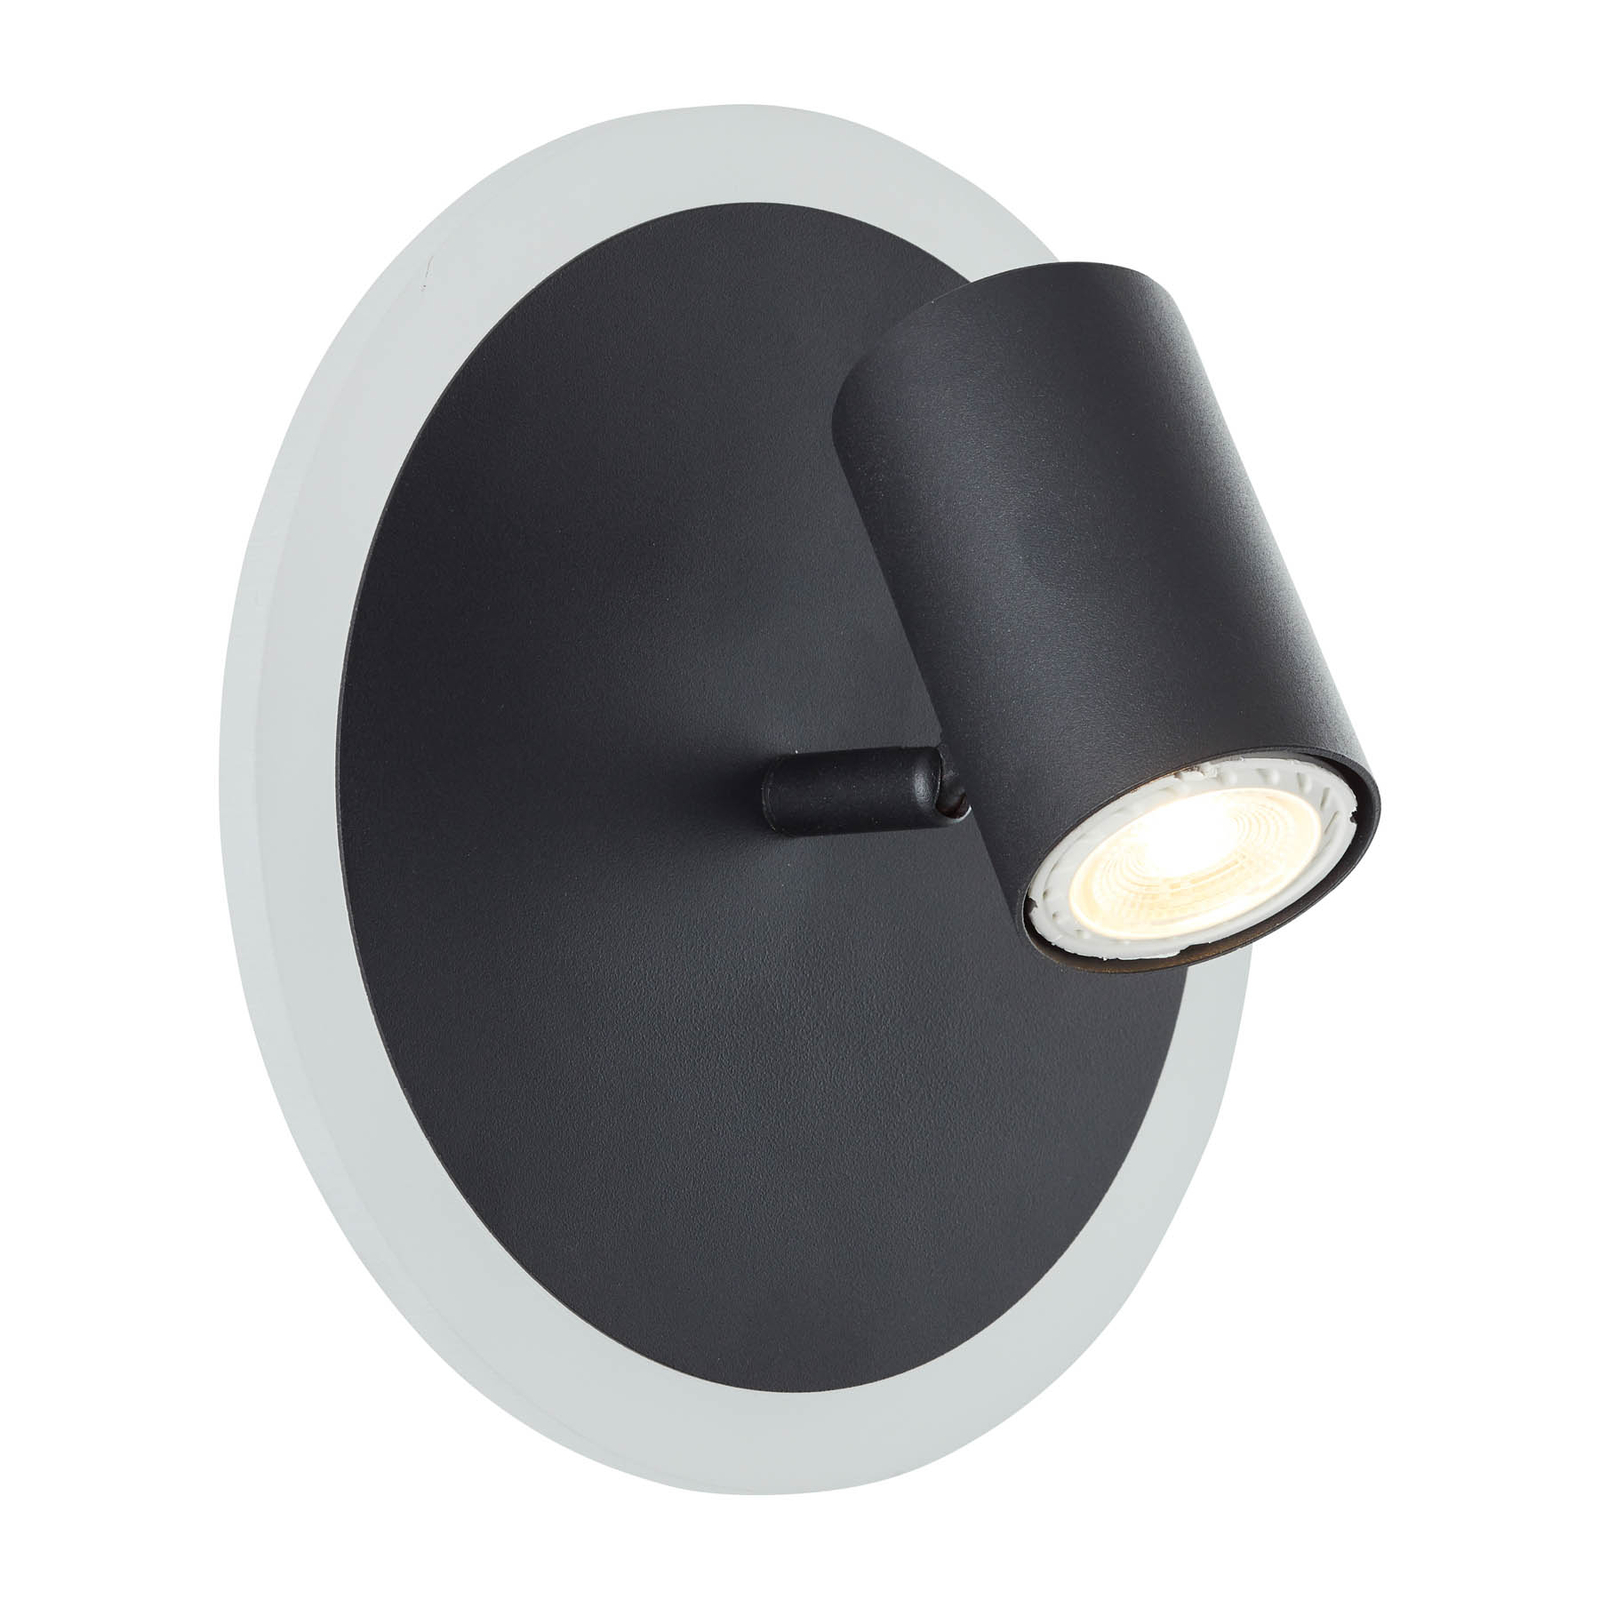 Beluga wall spotlight, one-bulb